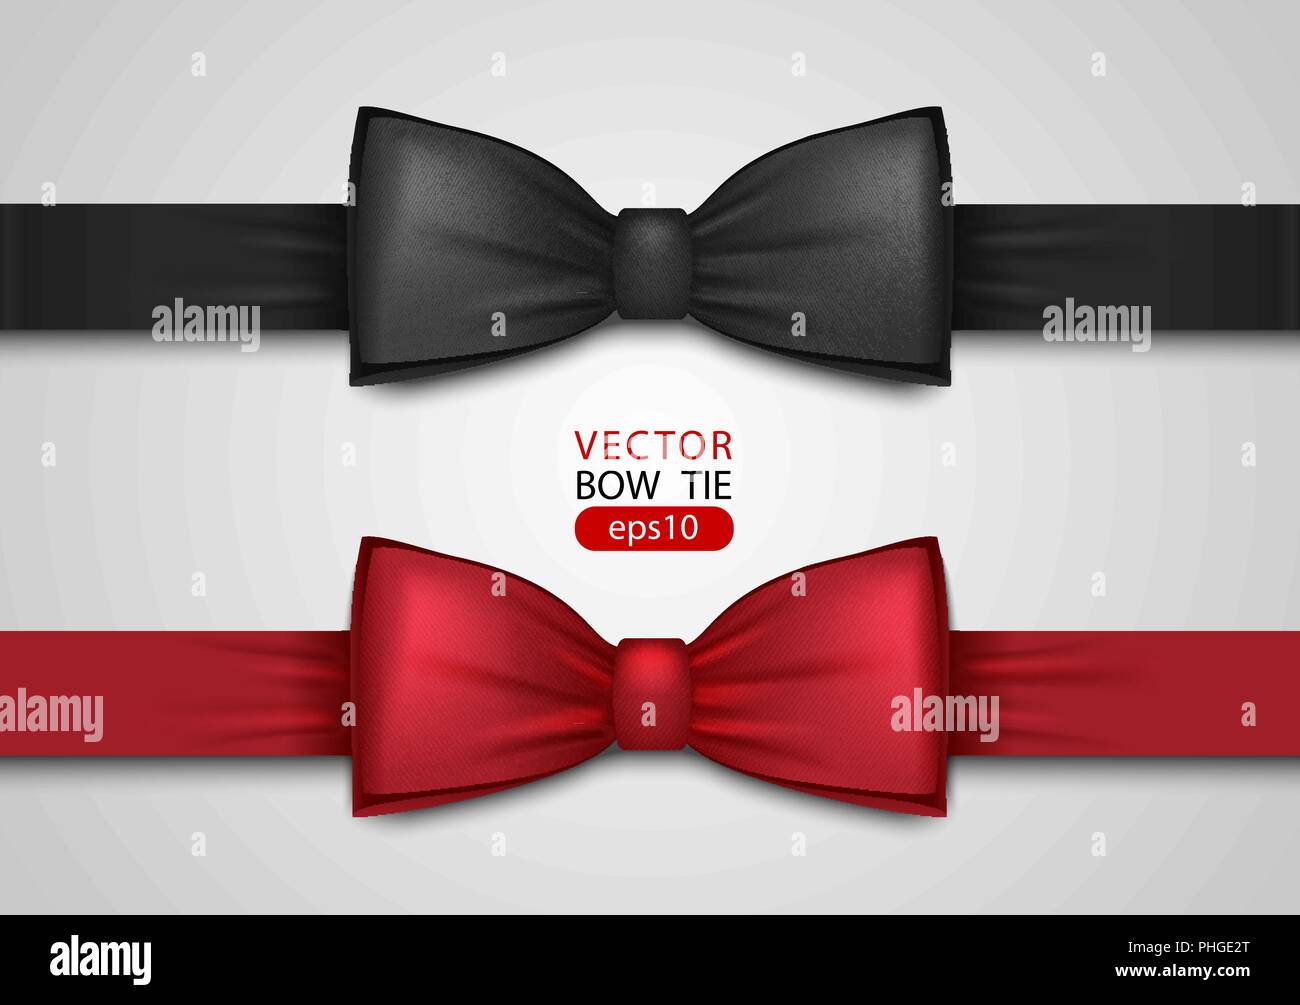 Nero e rosso il filtro bow tie, realistici illustrazione vettoriale, isolato su sfondo bianco. Elegante collo di seta prua. Evento Vip accessorio. Illustrazione Vettoriale